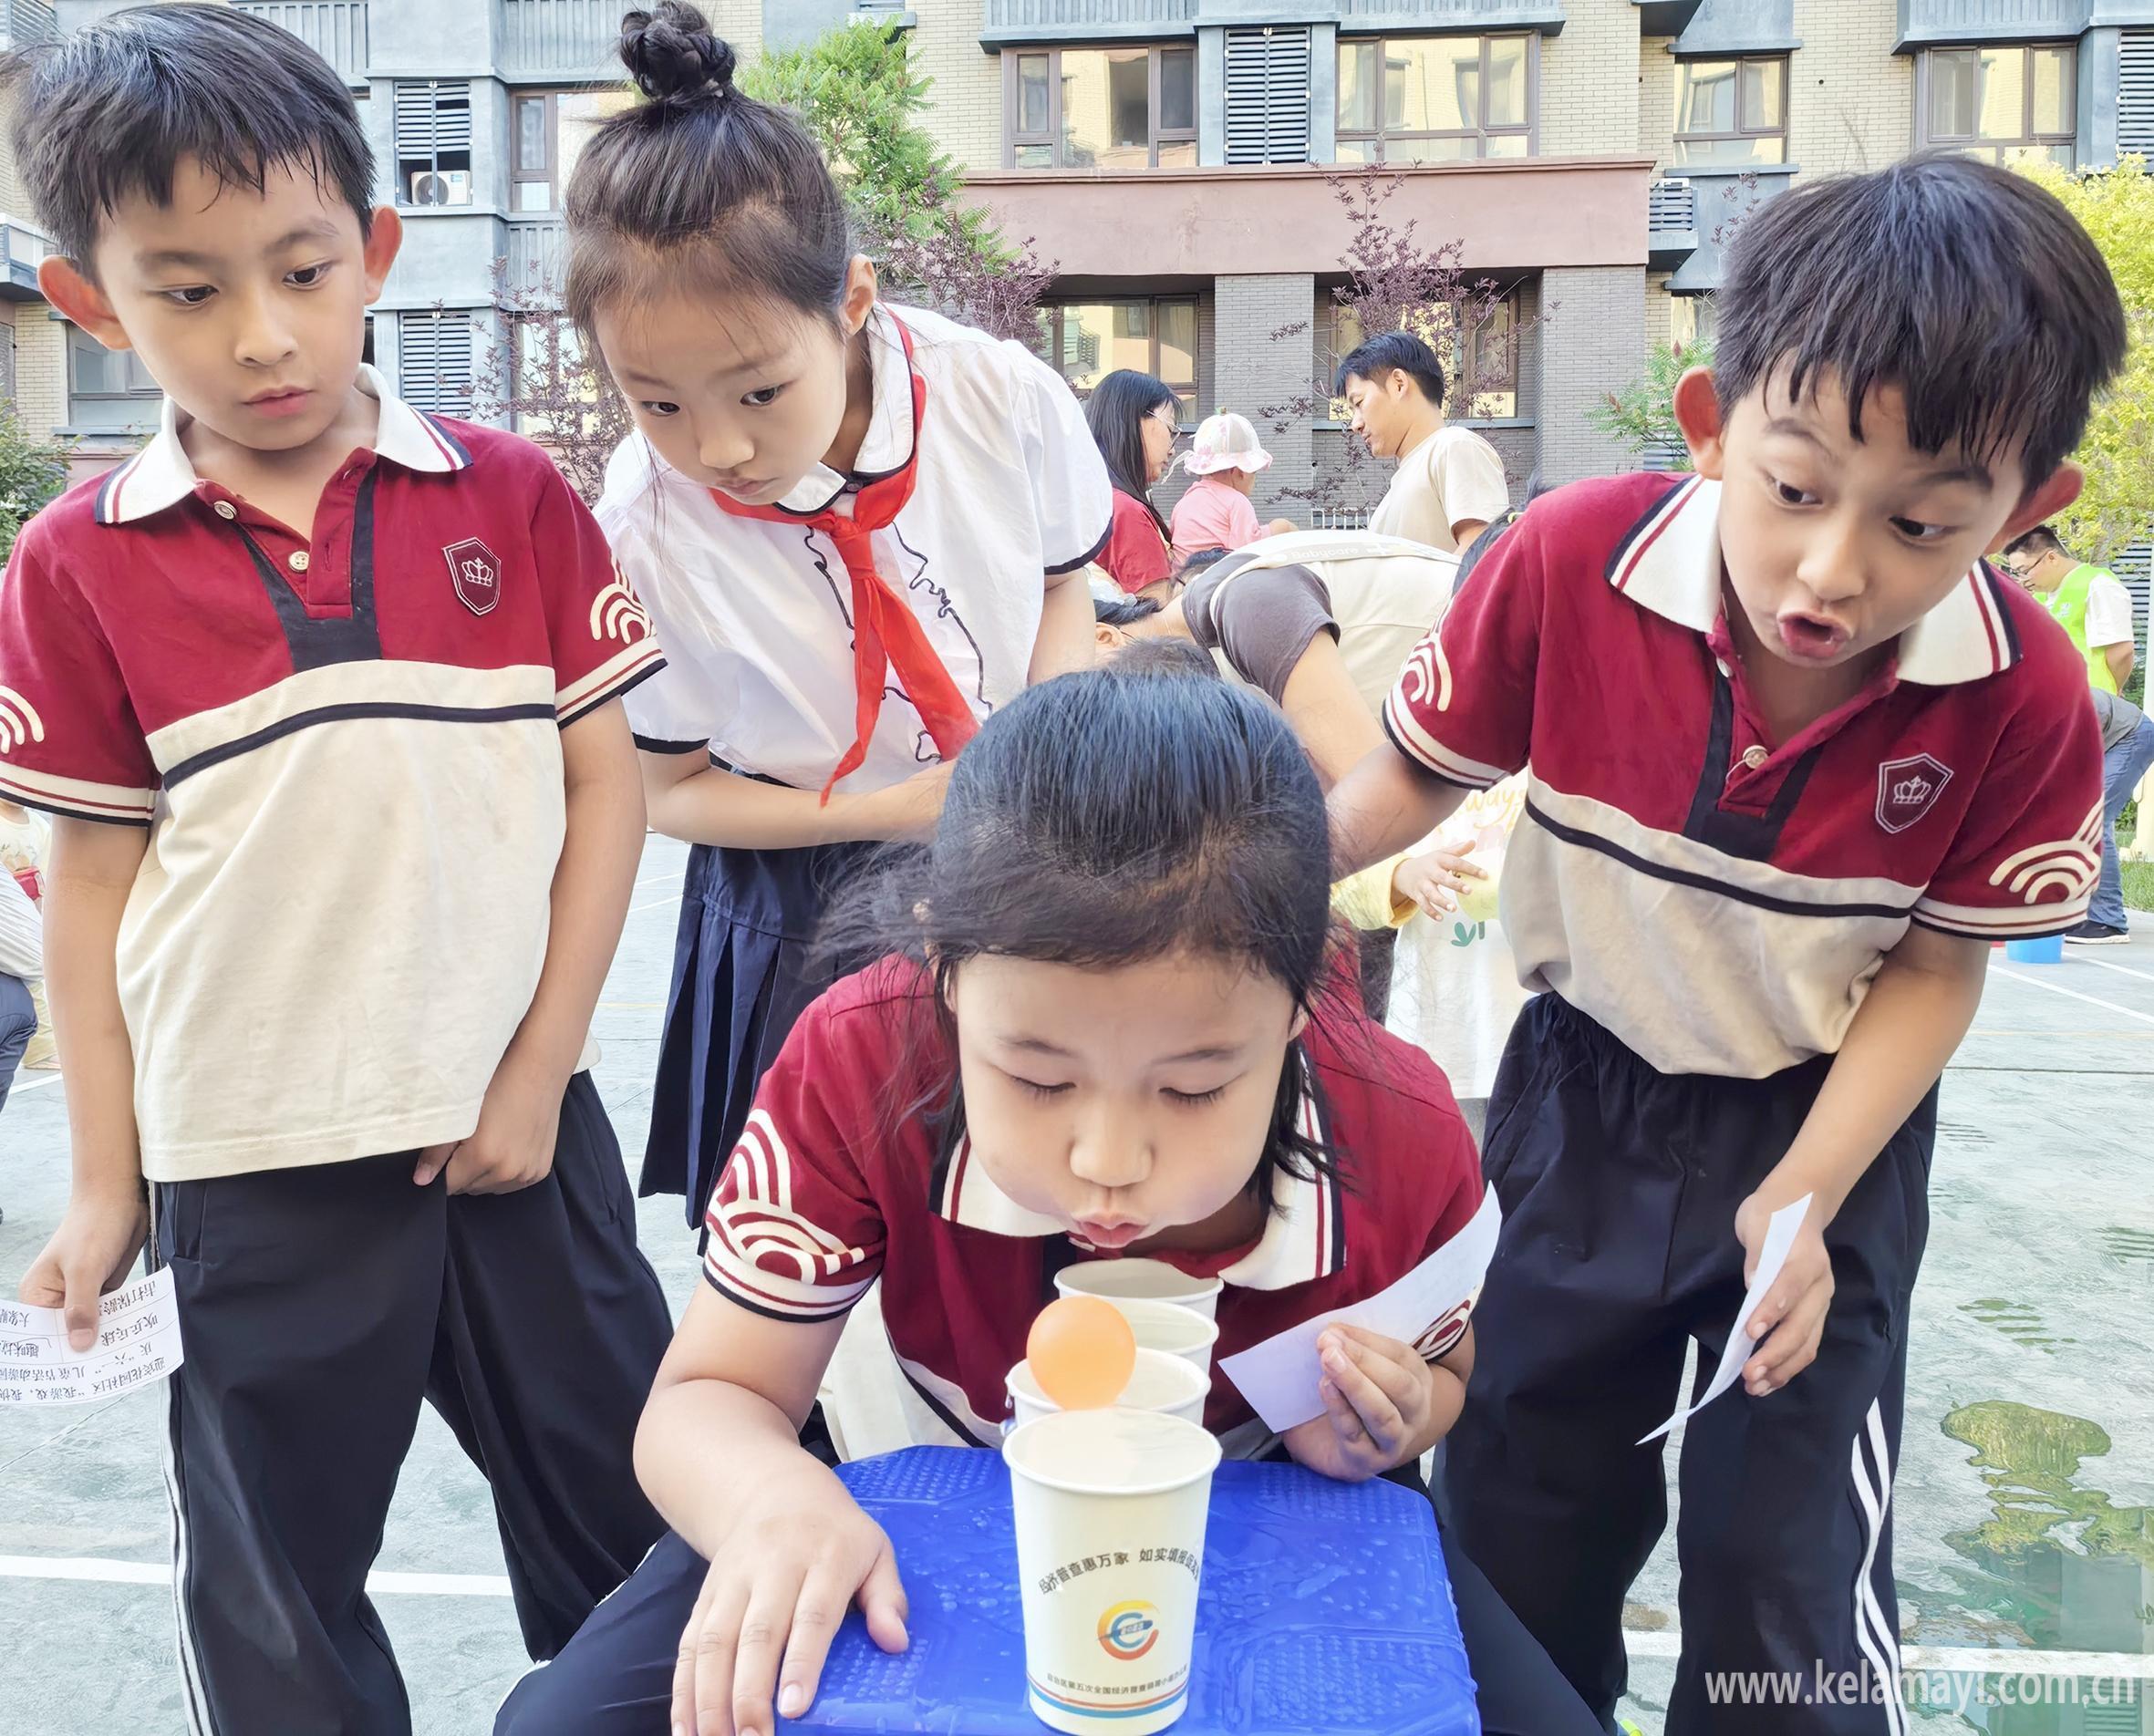 5月30日,克拉玛依区迎宾花园社区联合物业企业举办儿童节活动